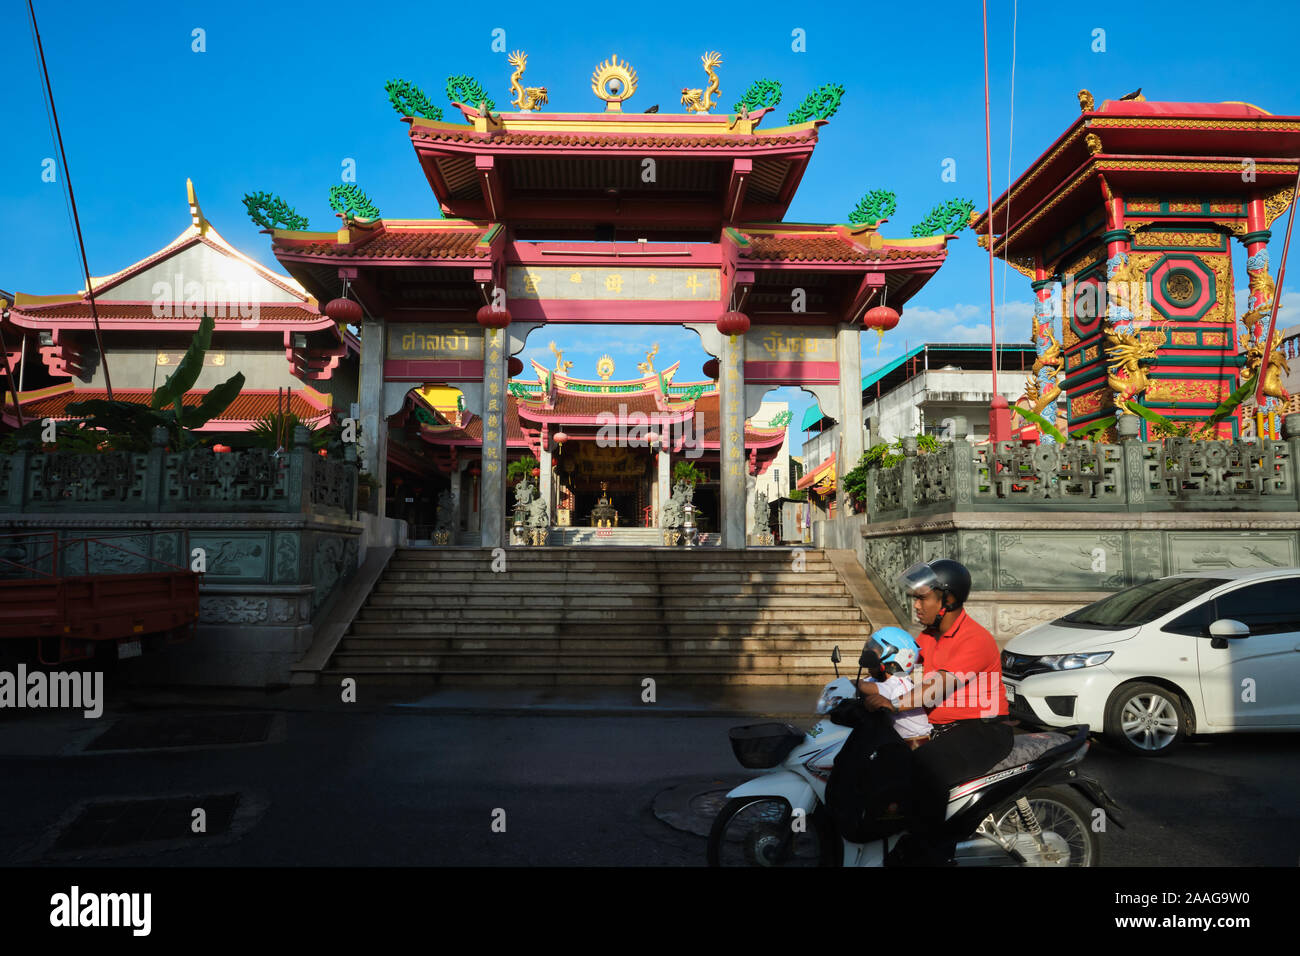 Un motard passe devant Jui Tui Temple, un temple Taoïste dans la ville de Phuket (Phuket), Phuket, Thailand Banque D'Images